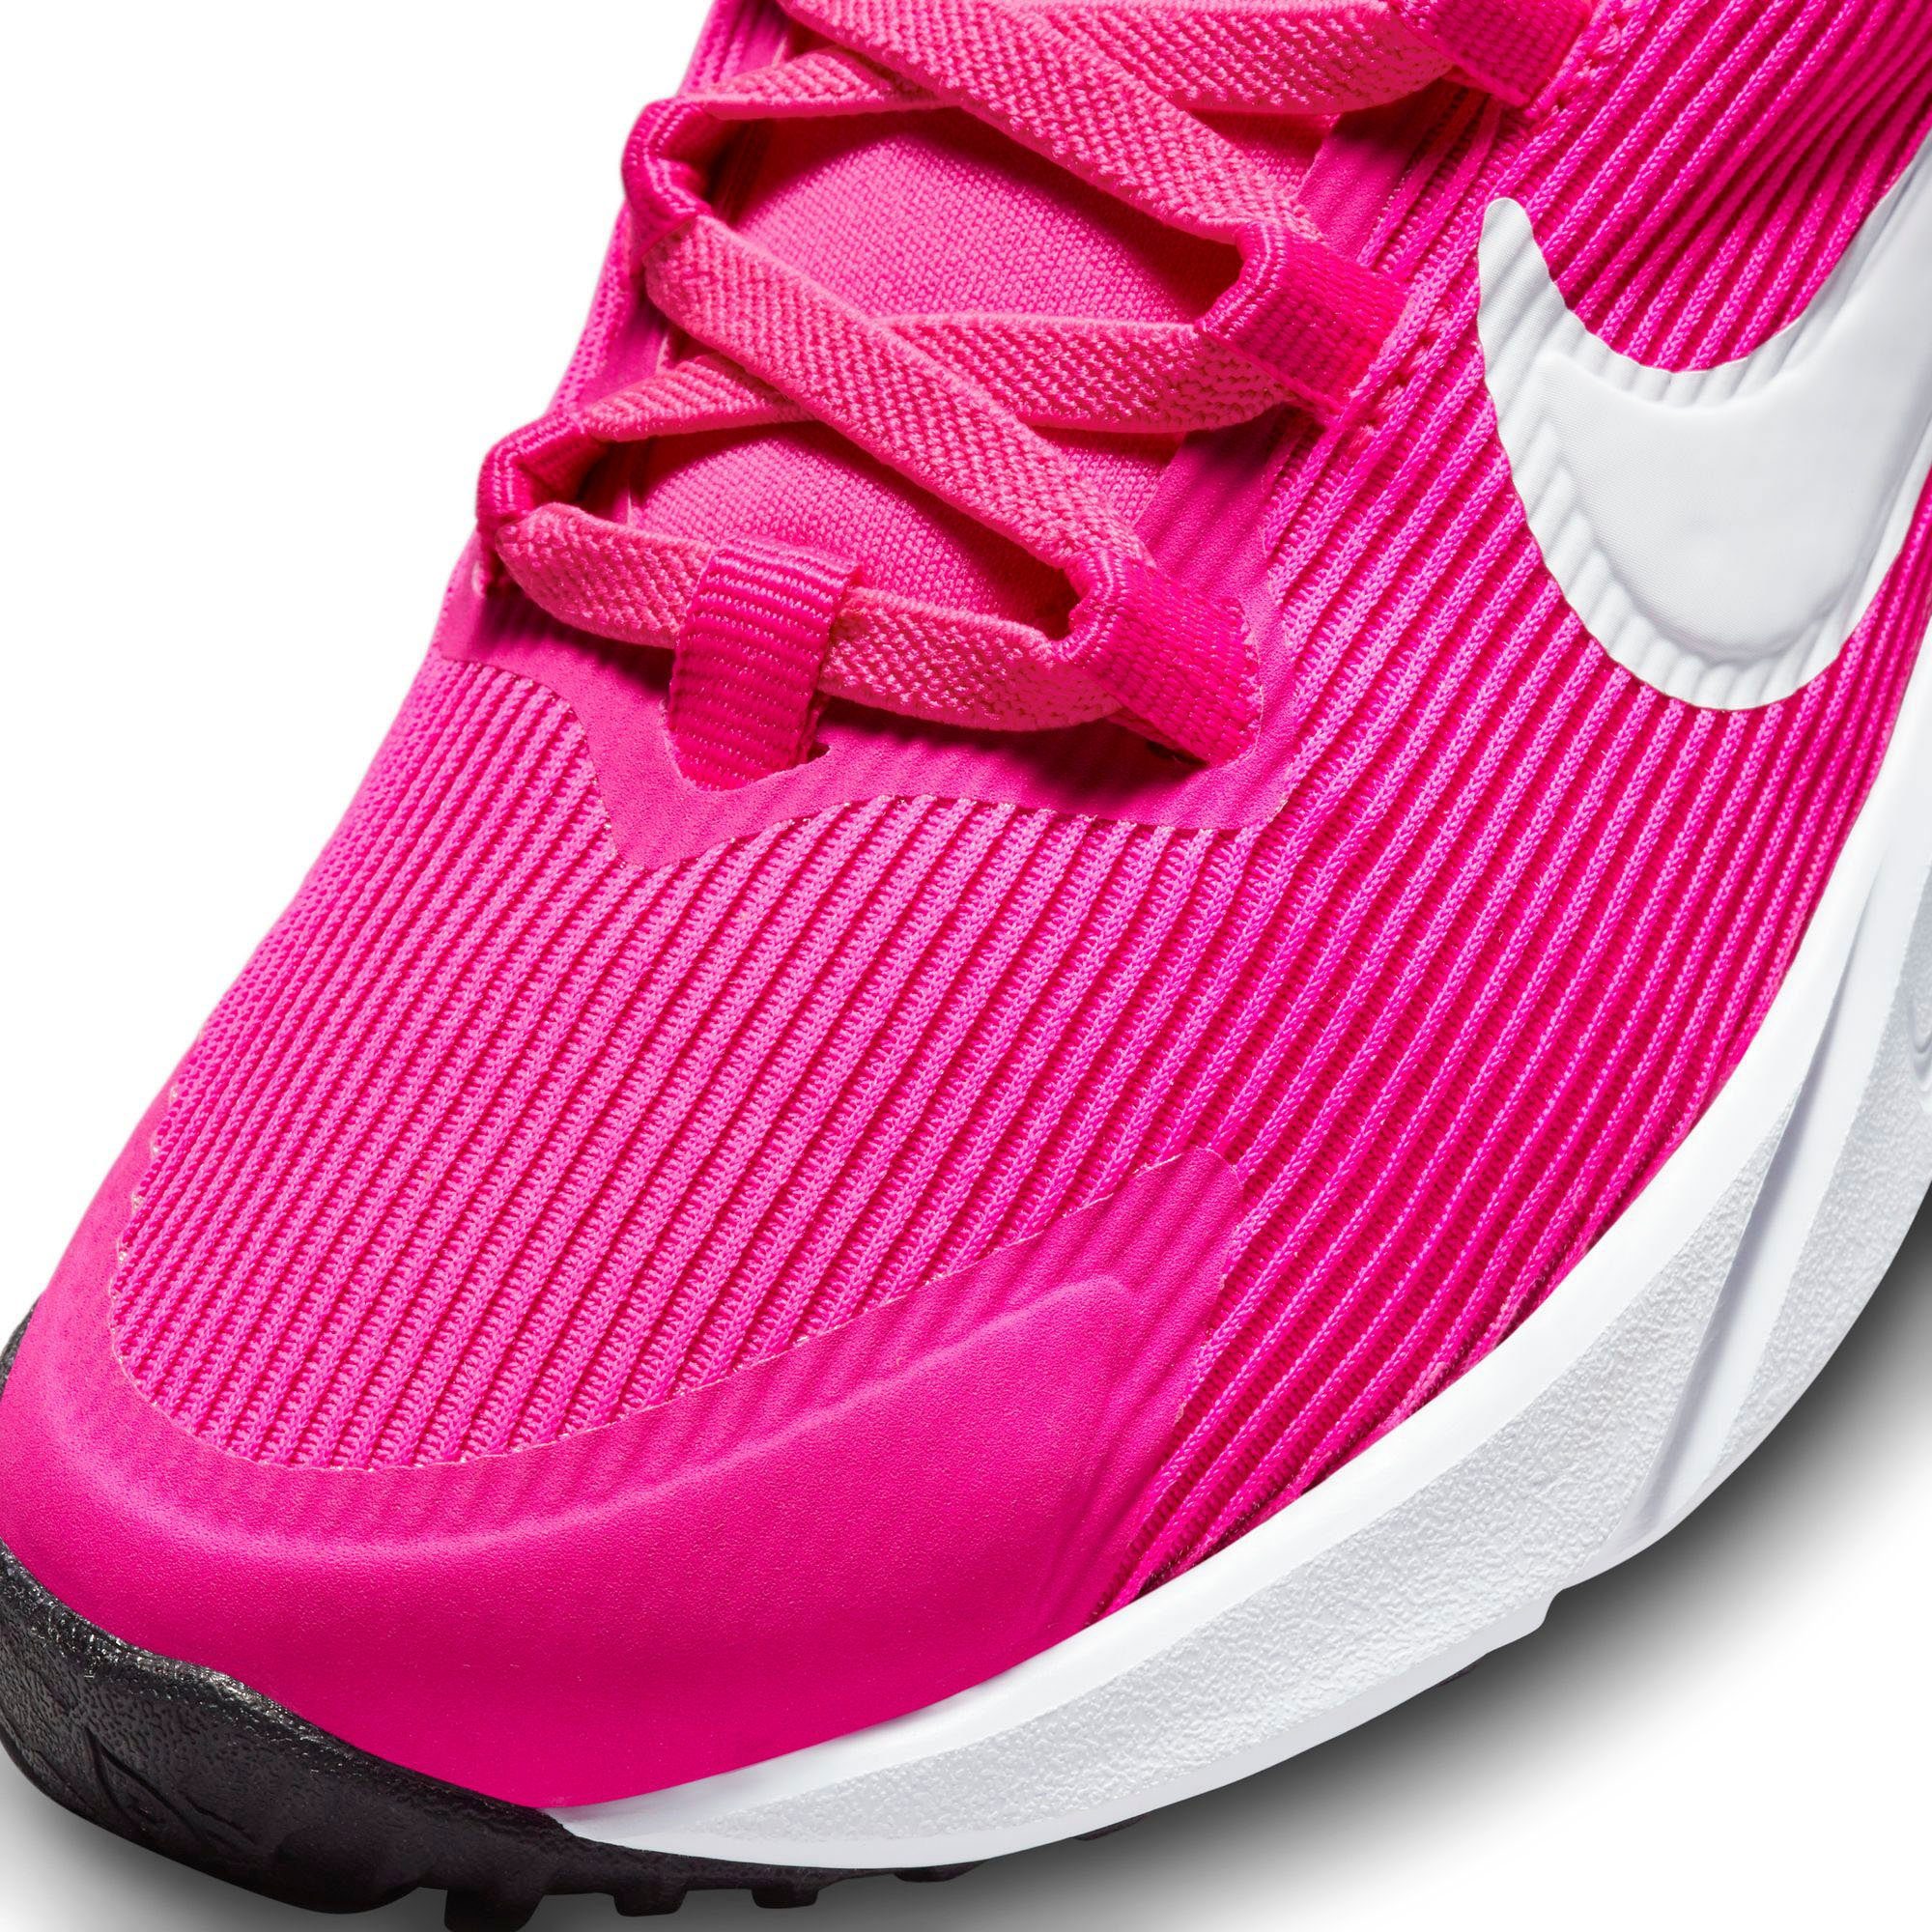 (PS) 4 Laufschuh Nike pink STAR RUNNER